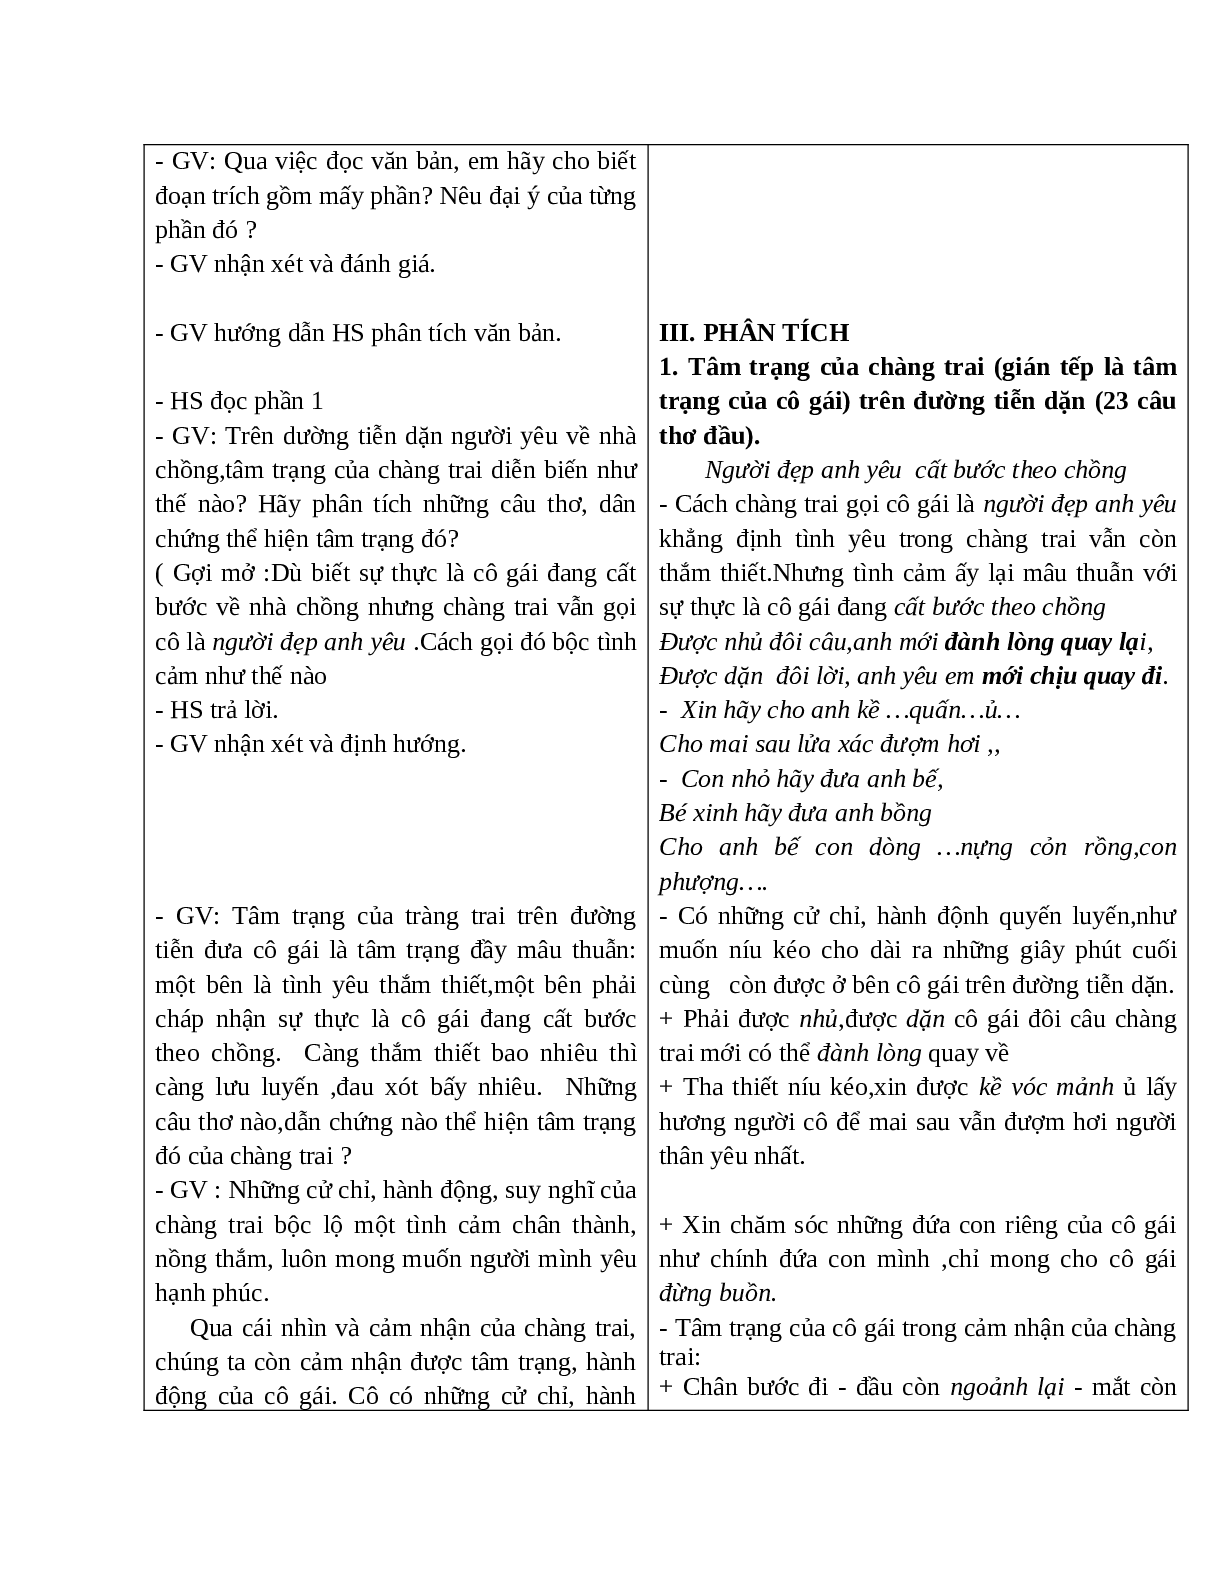 Giáo án Ngữ văn 10 tập 1 bài Lời tiễn dặn mới nhất (trang 3)